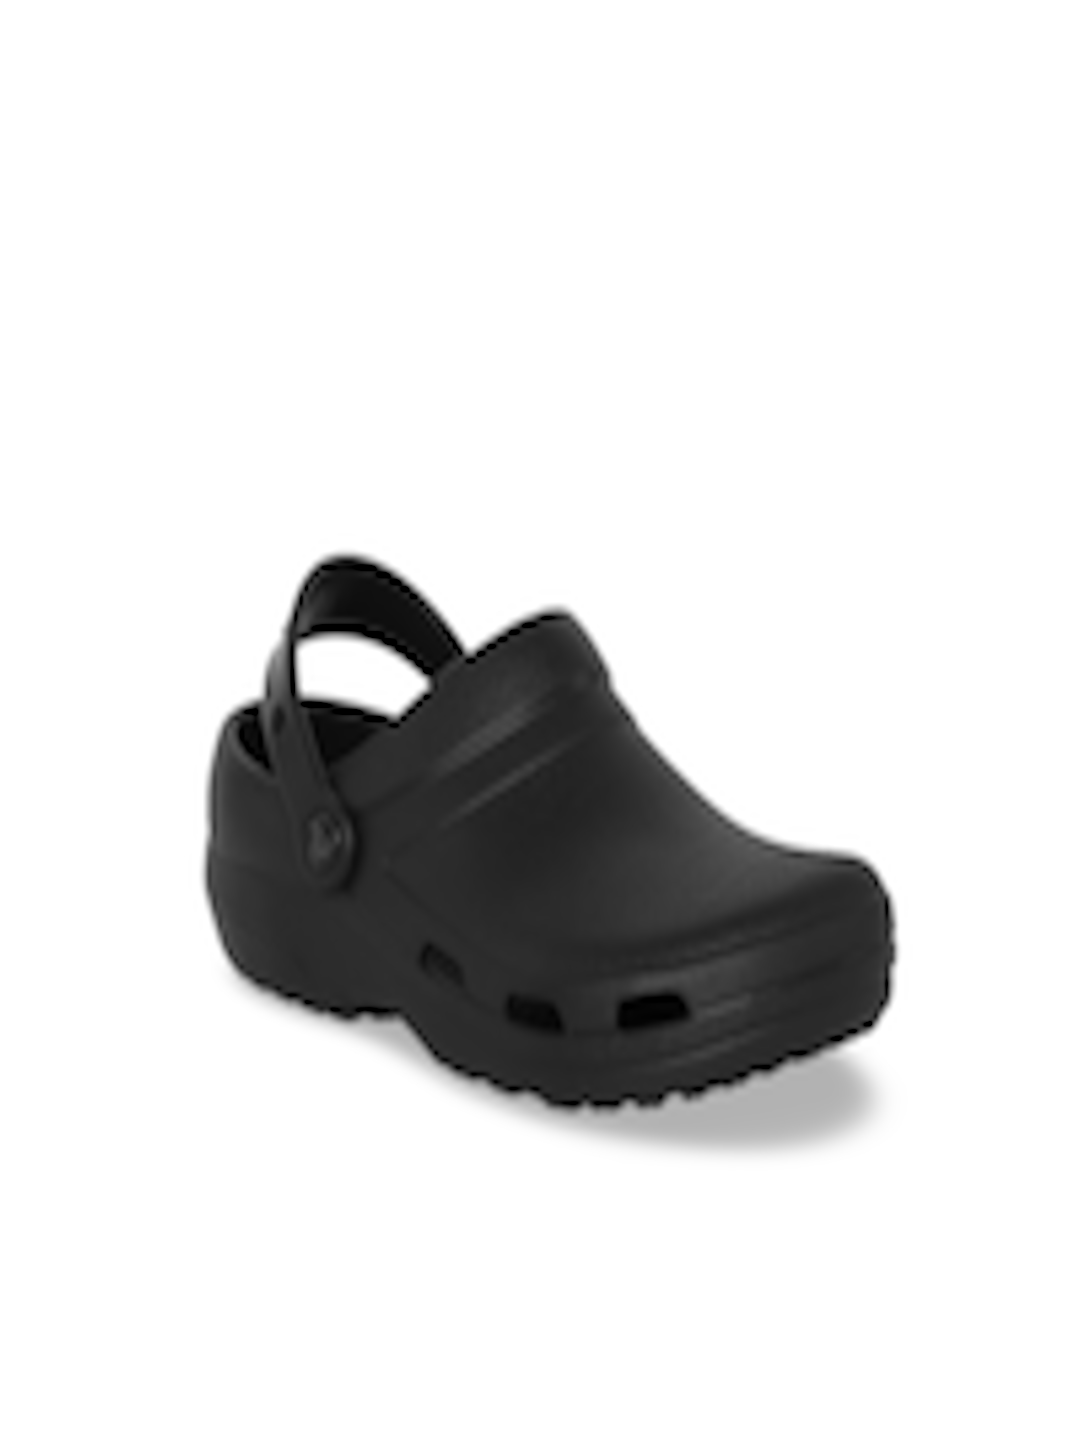 Buy Crocs Unisex Black Solid Specialist II Clogs - Flip Flops for